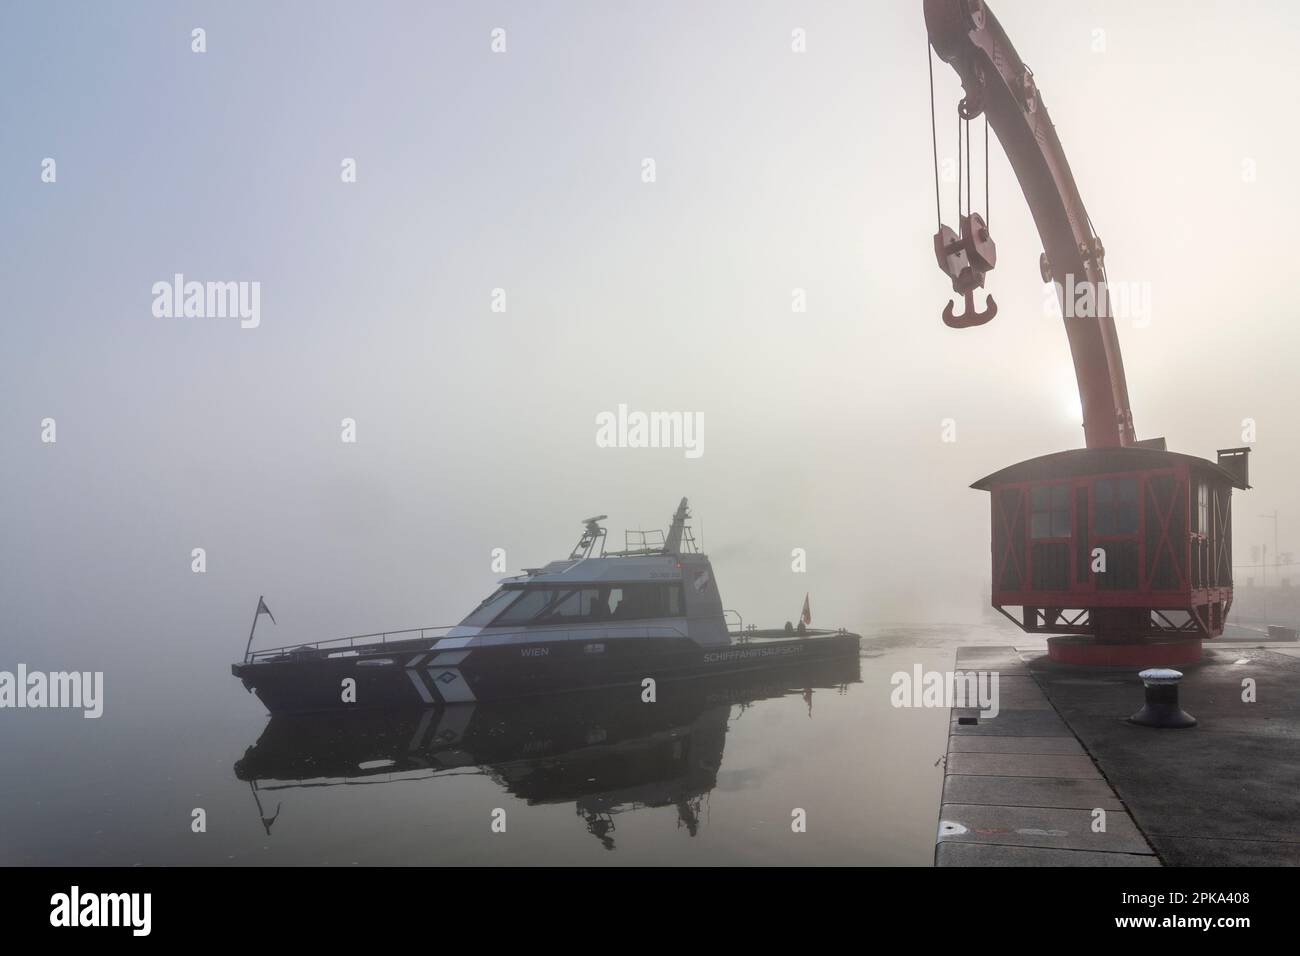 Vienna, nebbia sul fiume Donau (Danubio), vecchia gru portuale, barca di Schifffahrtsaufsicht (supervisione della spedizione) si sposta nel 02. Leopodstadt, Austria Foto Stock